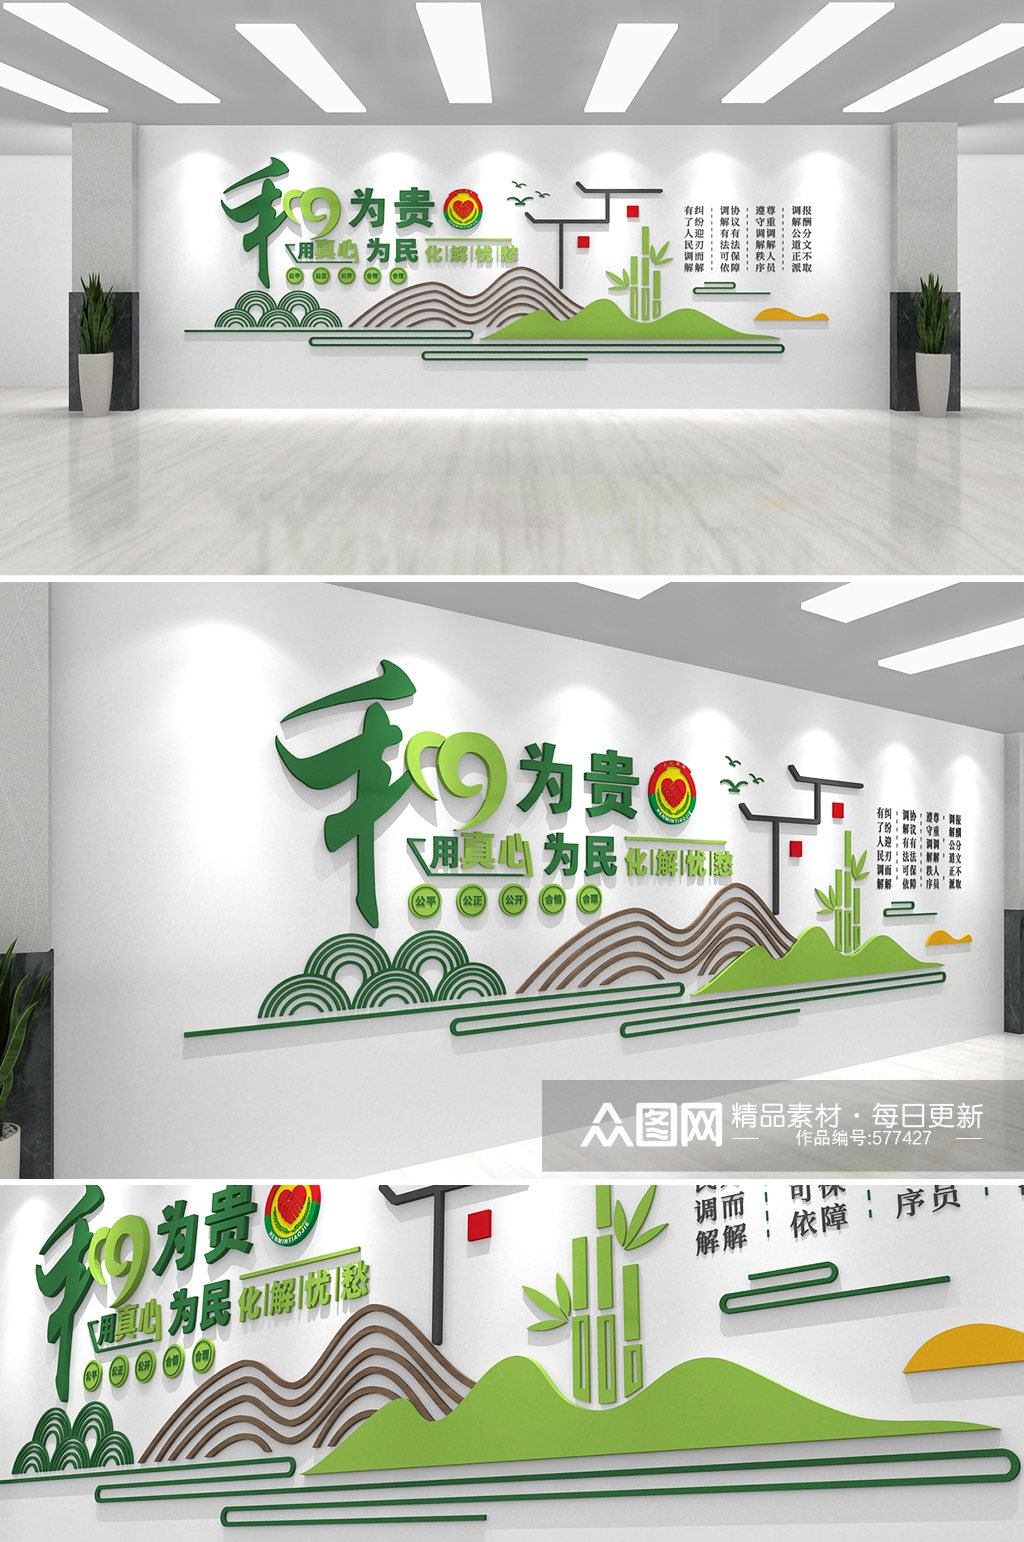 绿色清晰简约和为贵调解室矛调中心社区文化墙素材